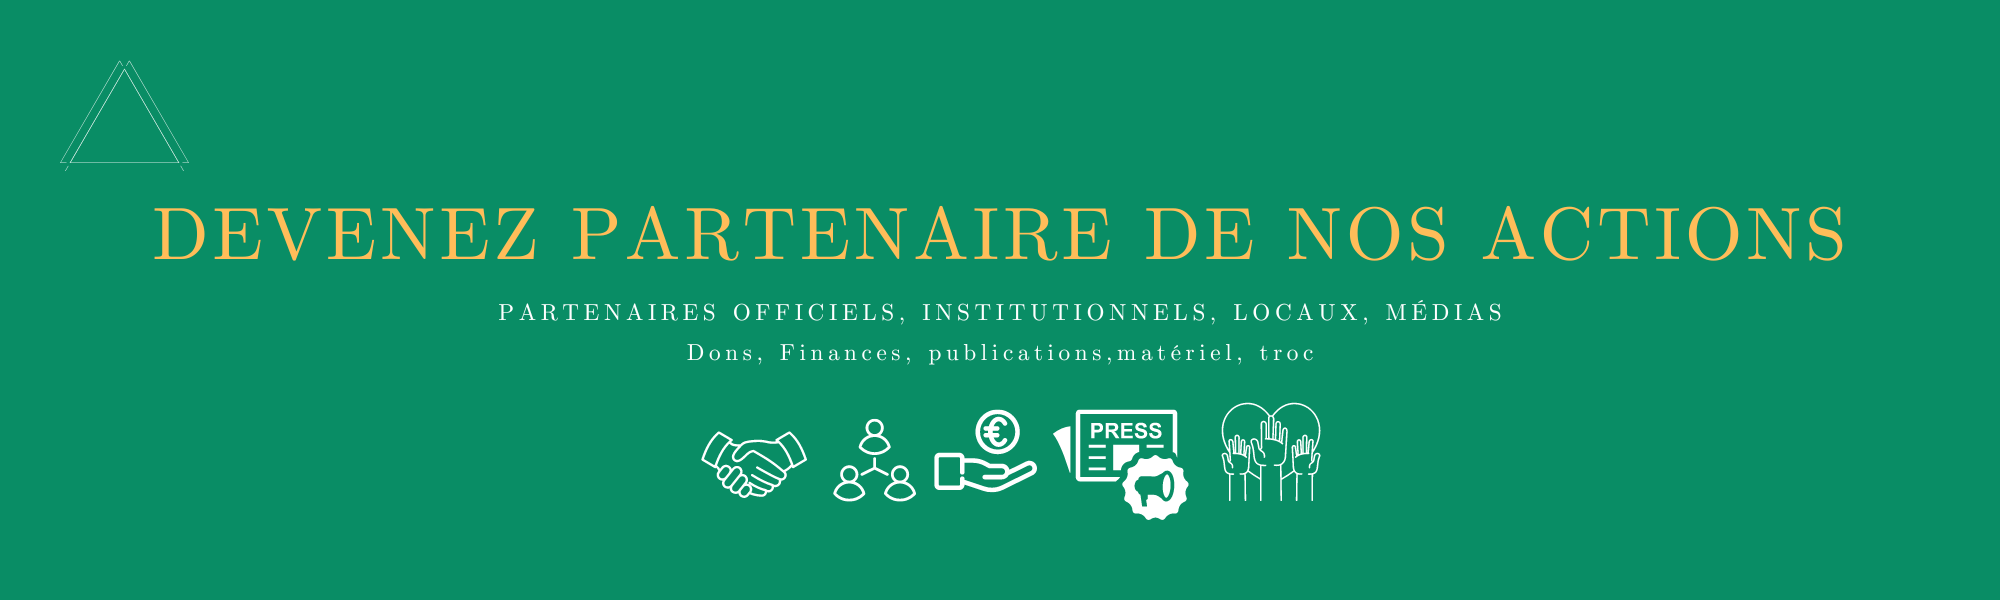 Devenez-partenaire-officiel-influenceur-presse-institutionnel-dans-un-écolieu-du-Green-Lab------Ecolieu-et-ferme-alternative-de-Green-et-Local